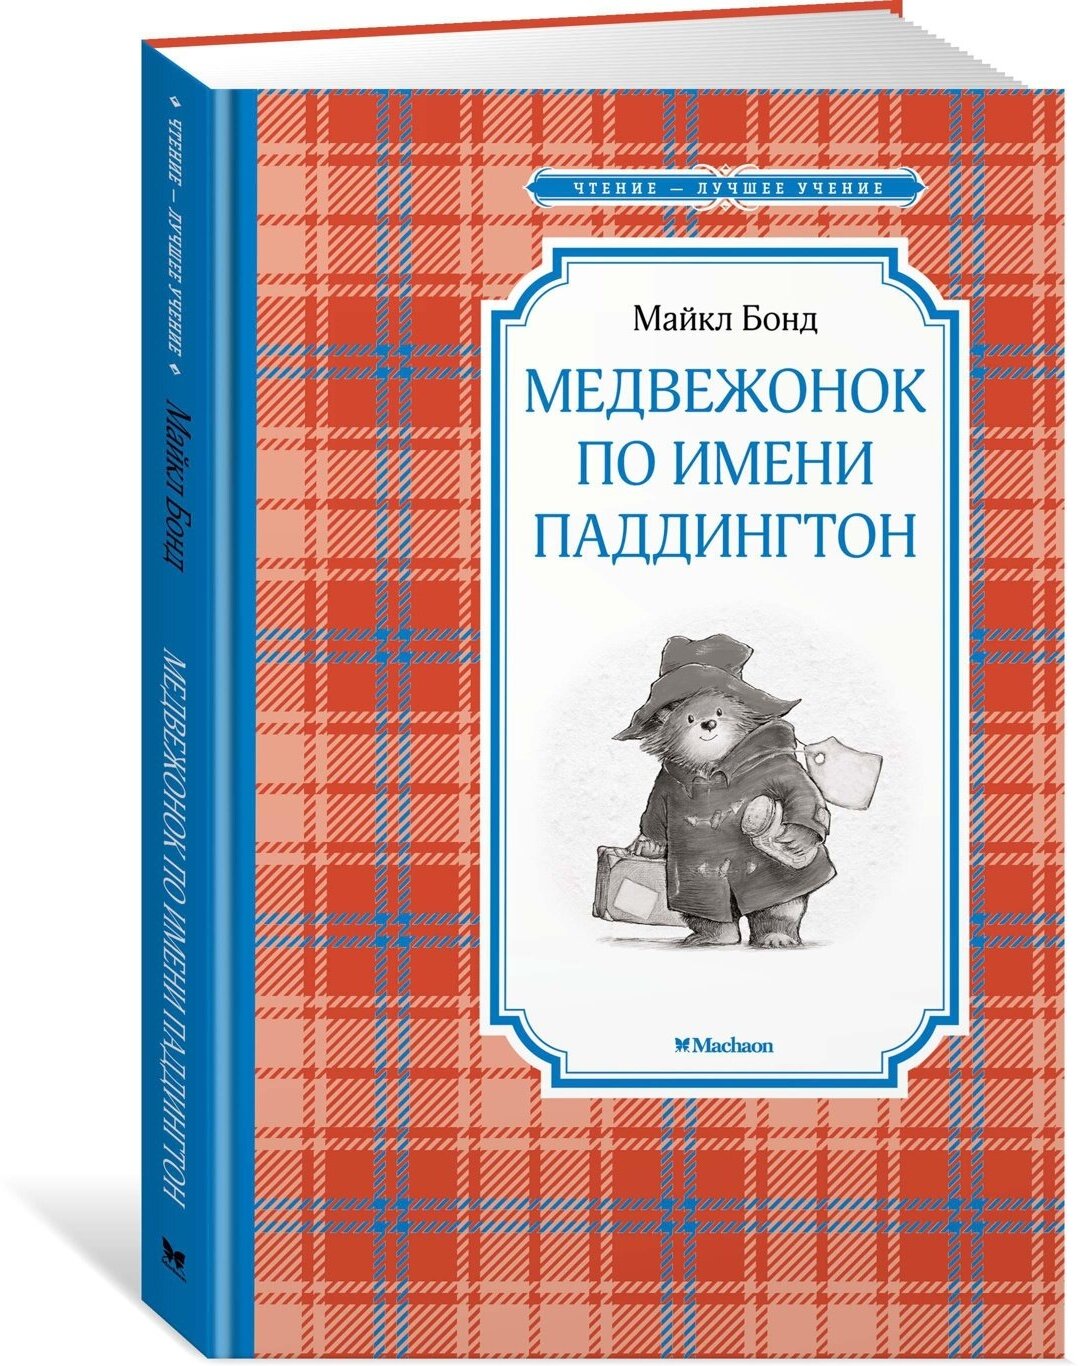 Книга Медвежонок по имени Паддингтон